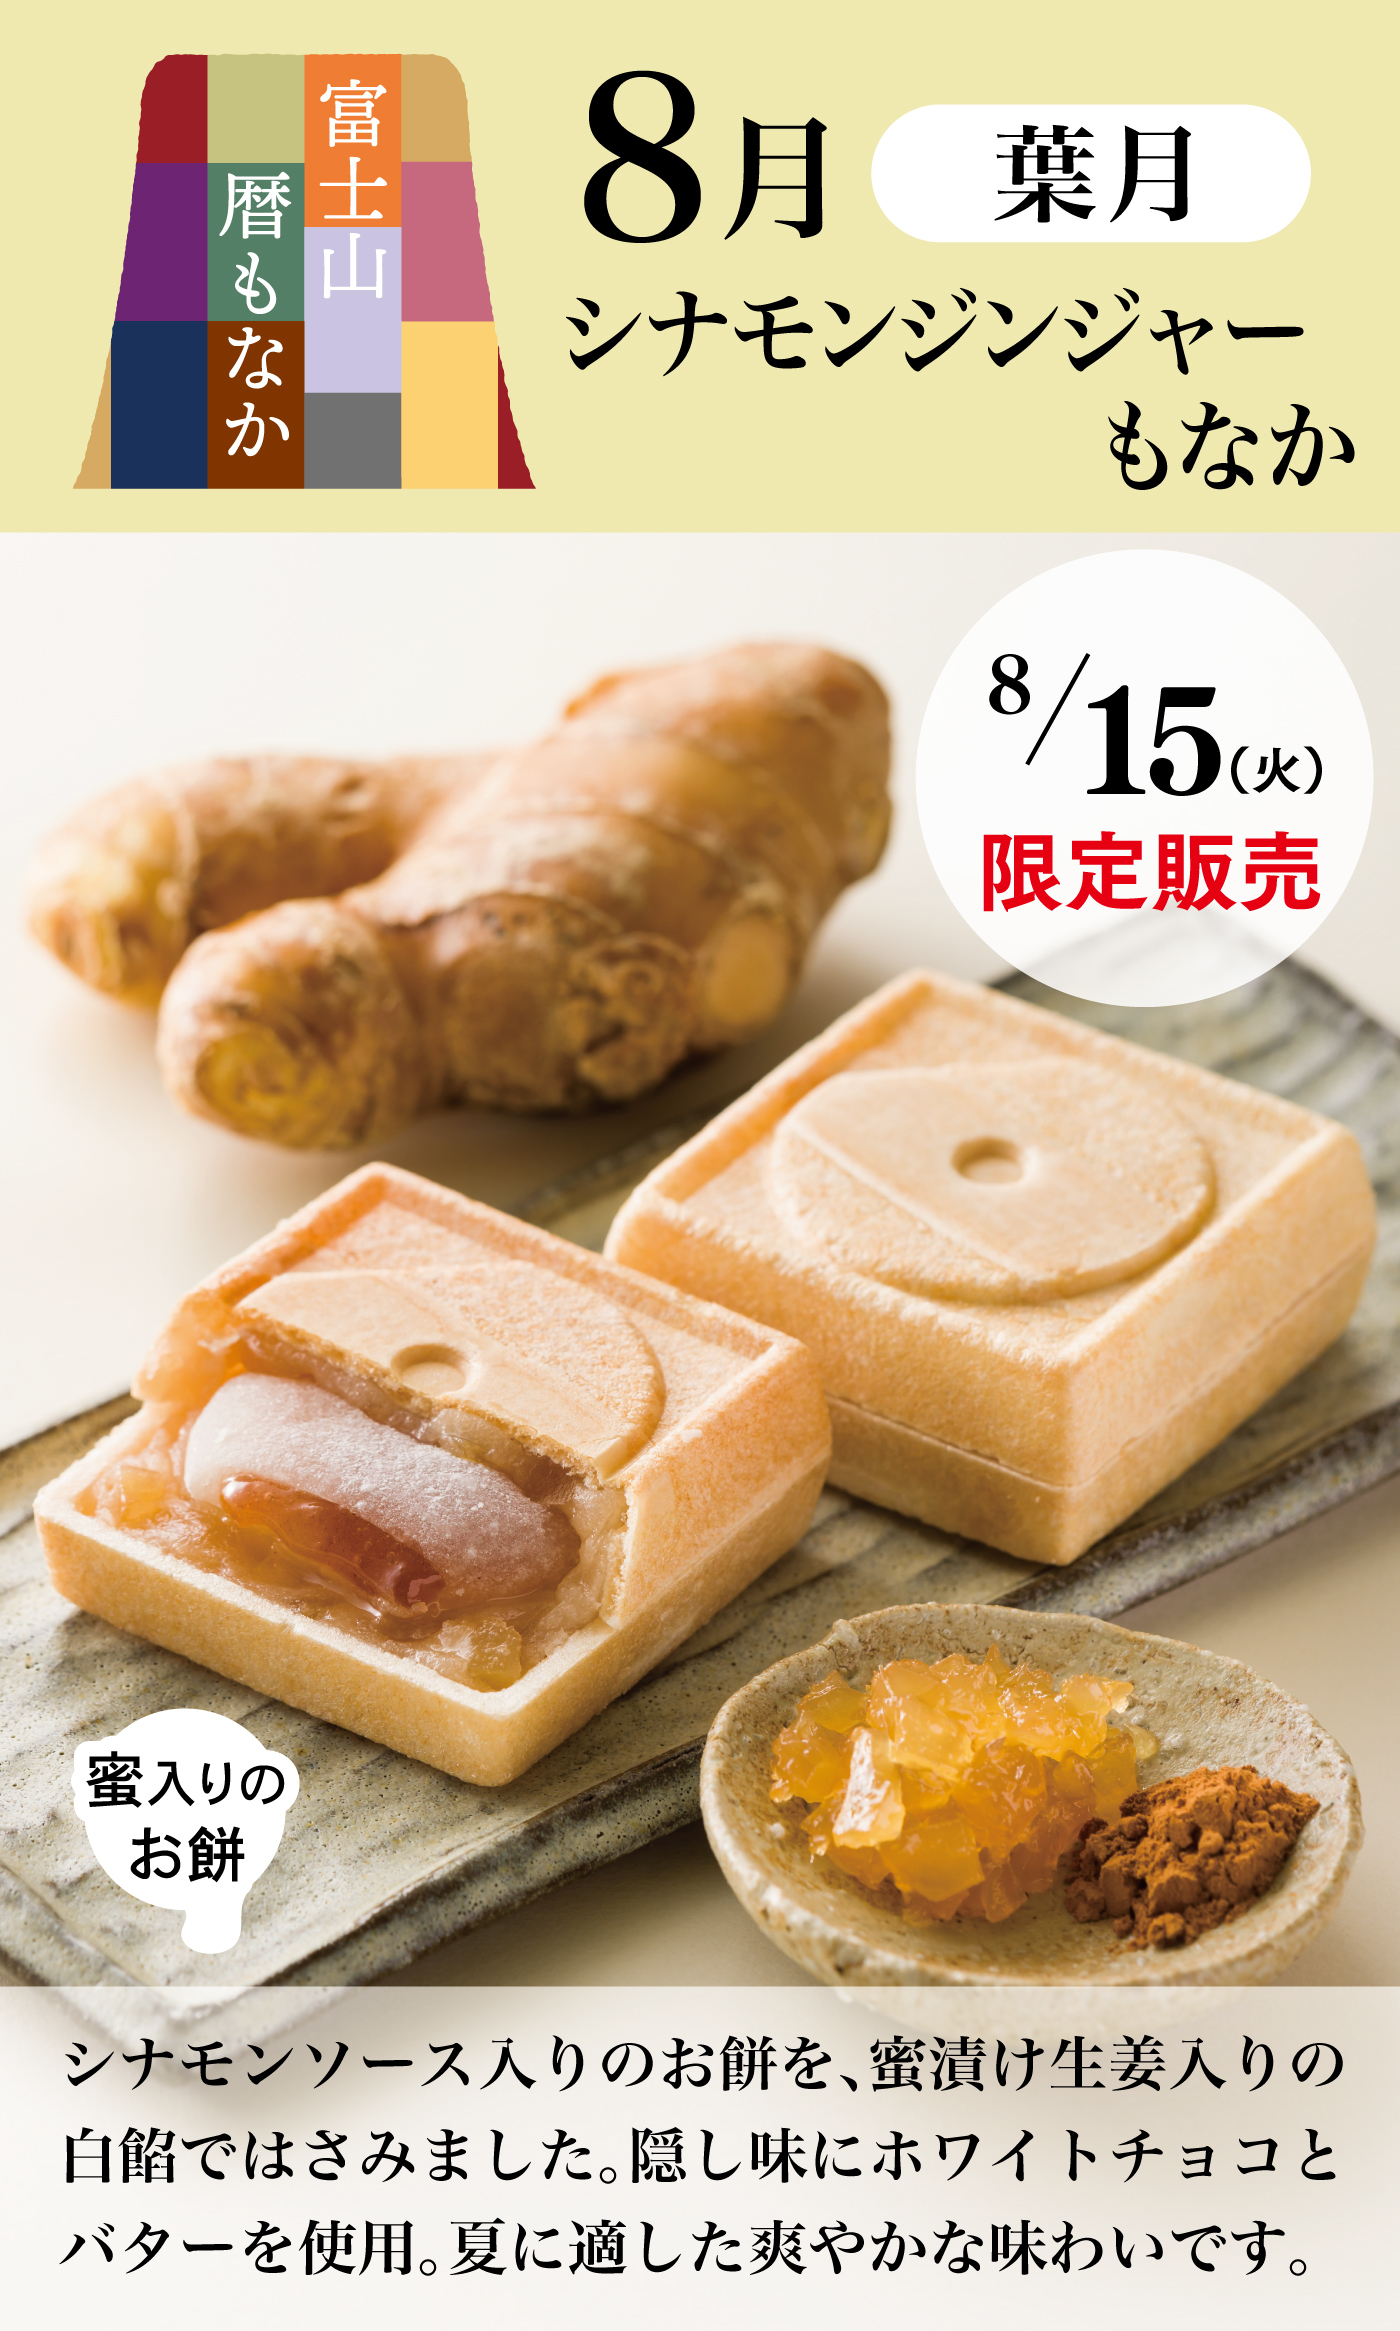 富士山暦もなか8月葉月シナモンジンジャーもなか8/15(火)限定販売蜜入りのお餅シナモンソース入りのお餅を、蜜漬け生姜入りの白餡ではさみました。隠し味にホワイトチョコとバターを使用。夏に適した爽やかな味わいです。